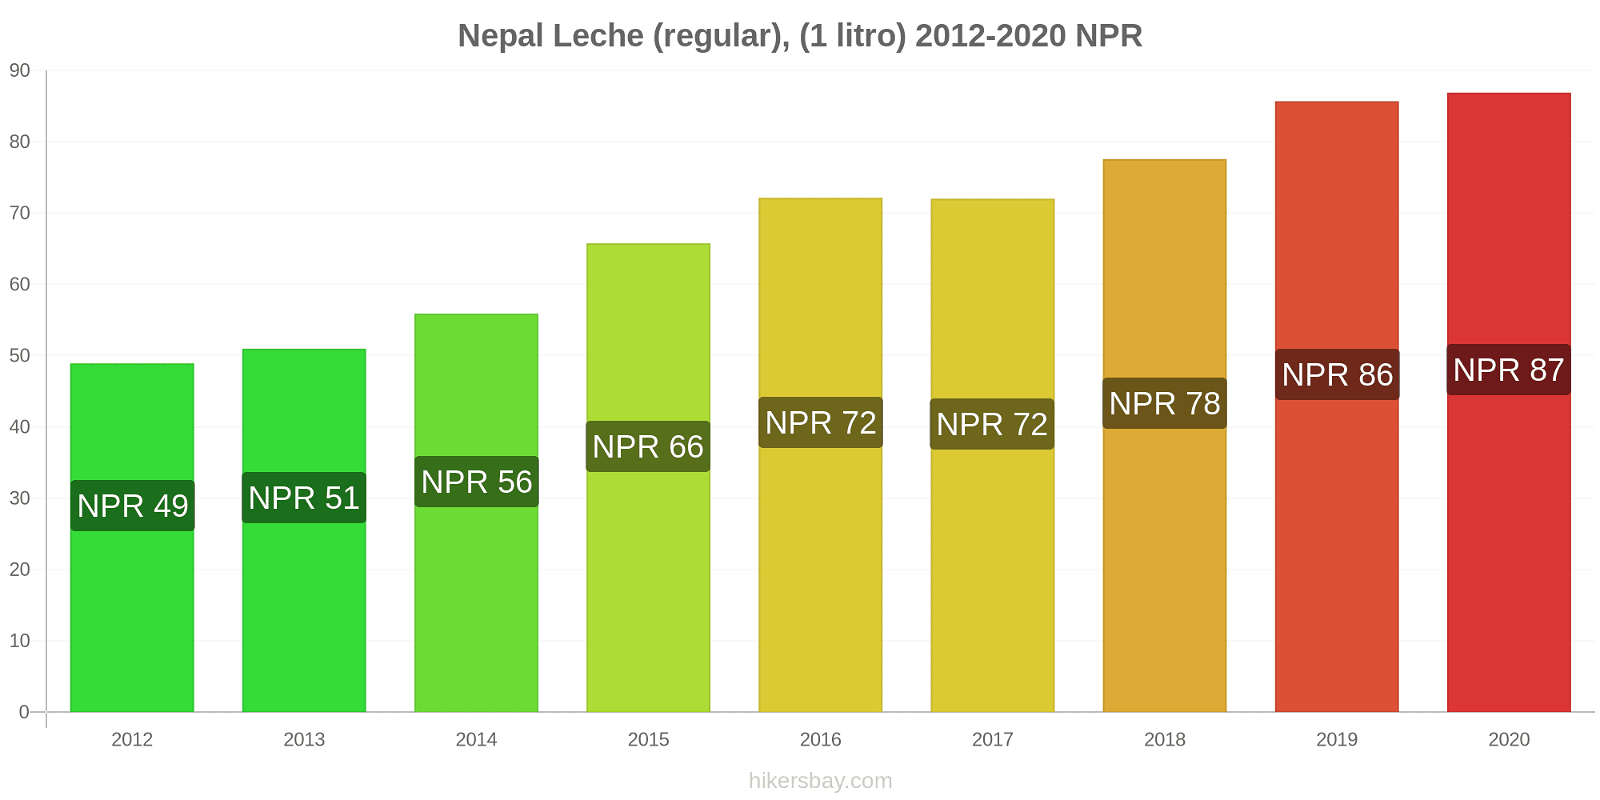 Nepal cambios de precios Leche (Regular), (1 litro) hikersbay.com